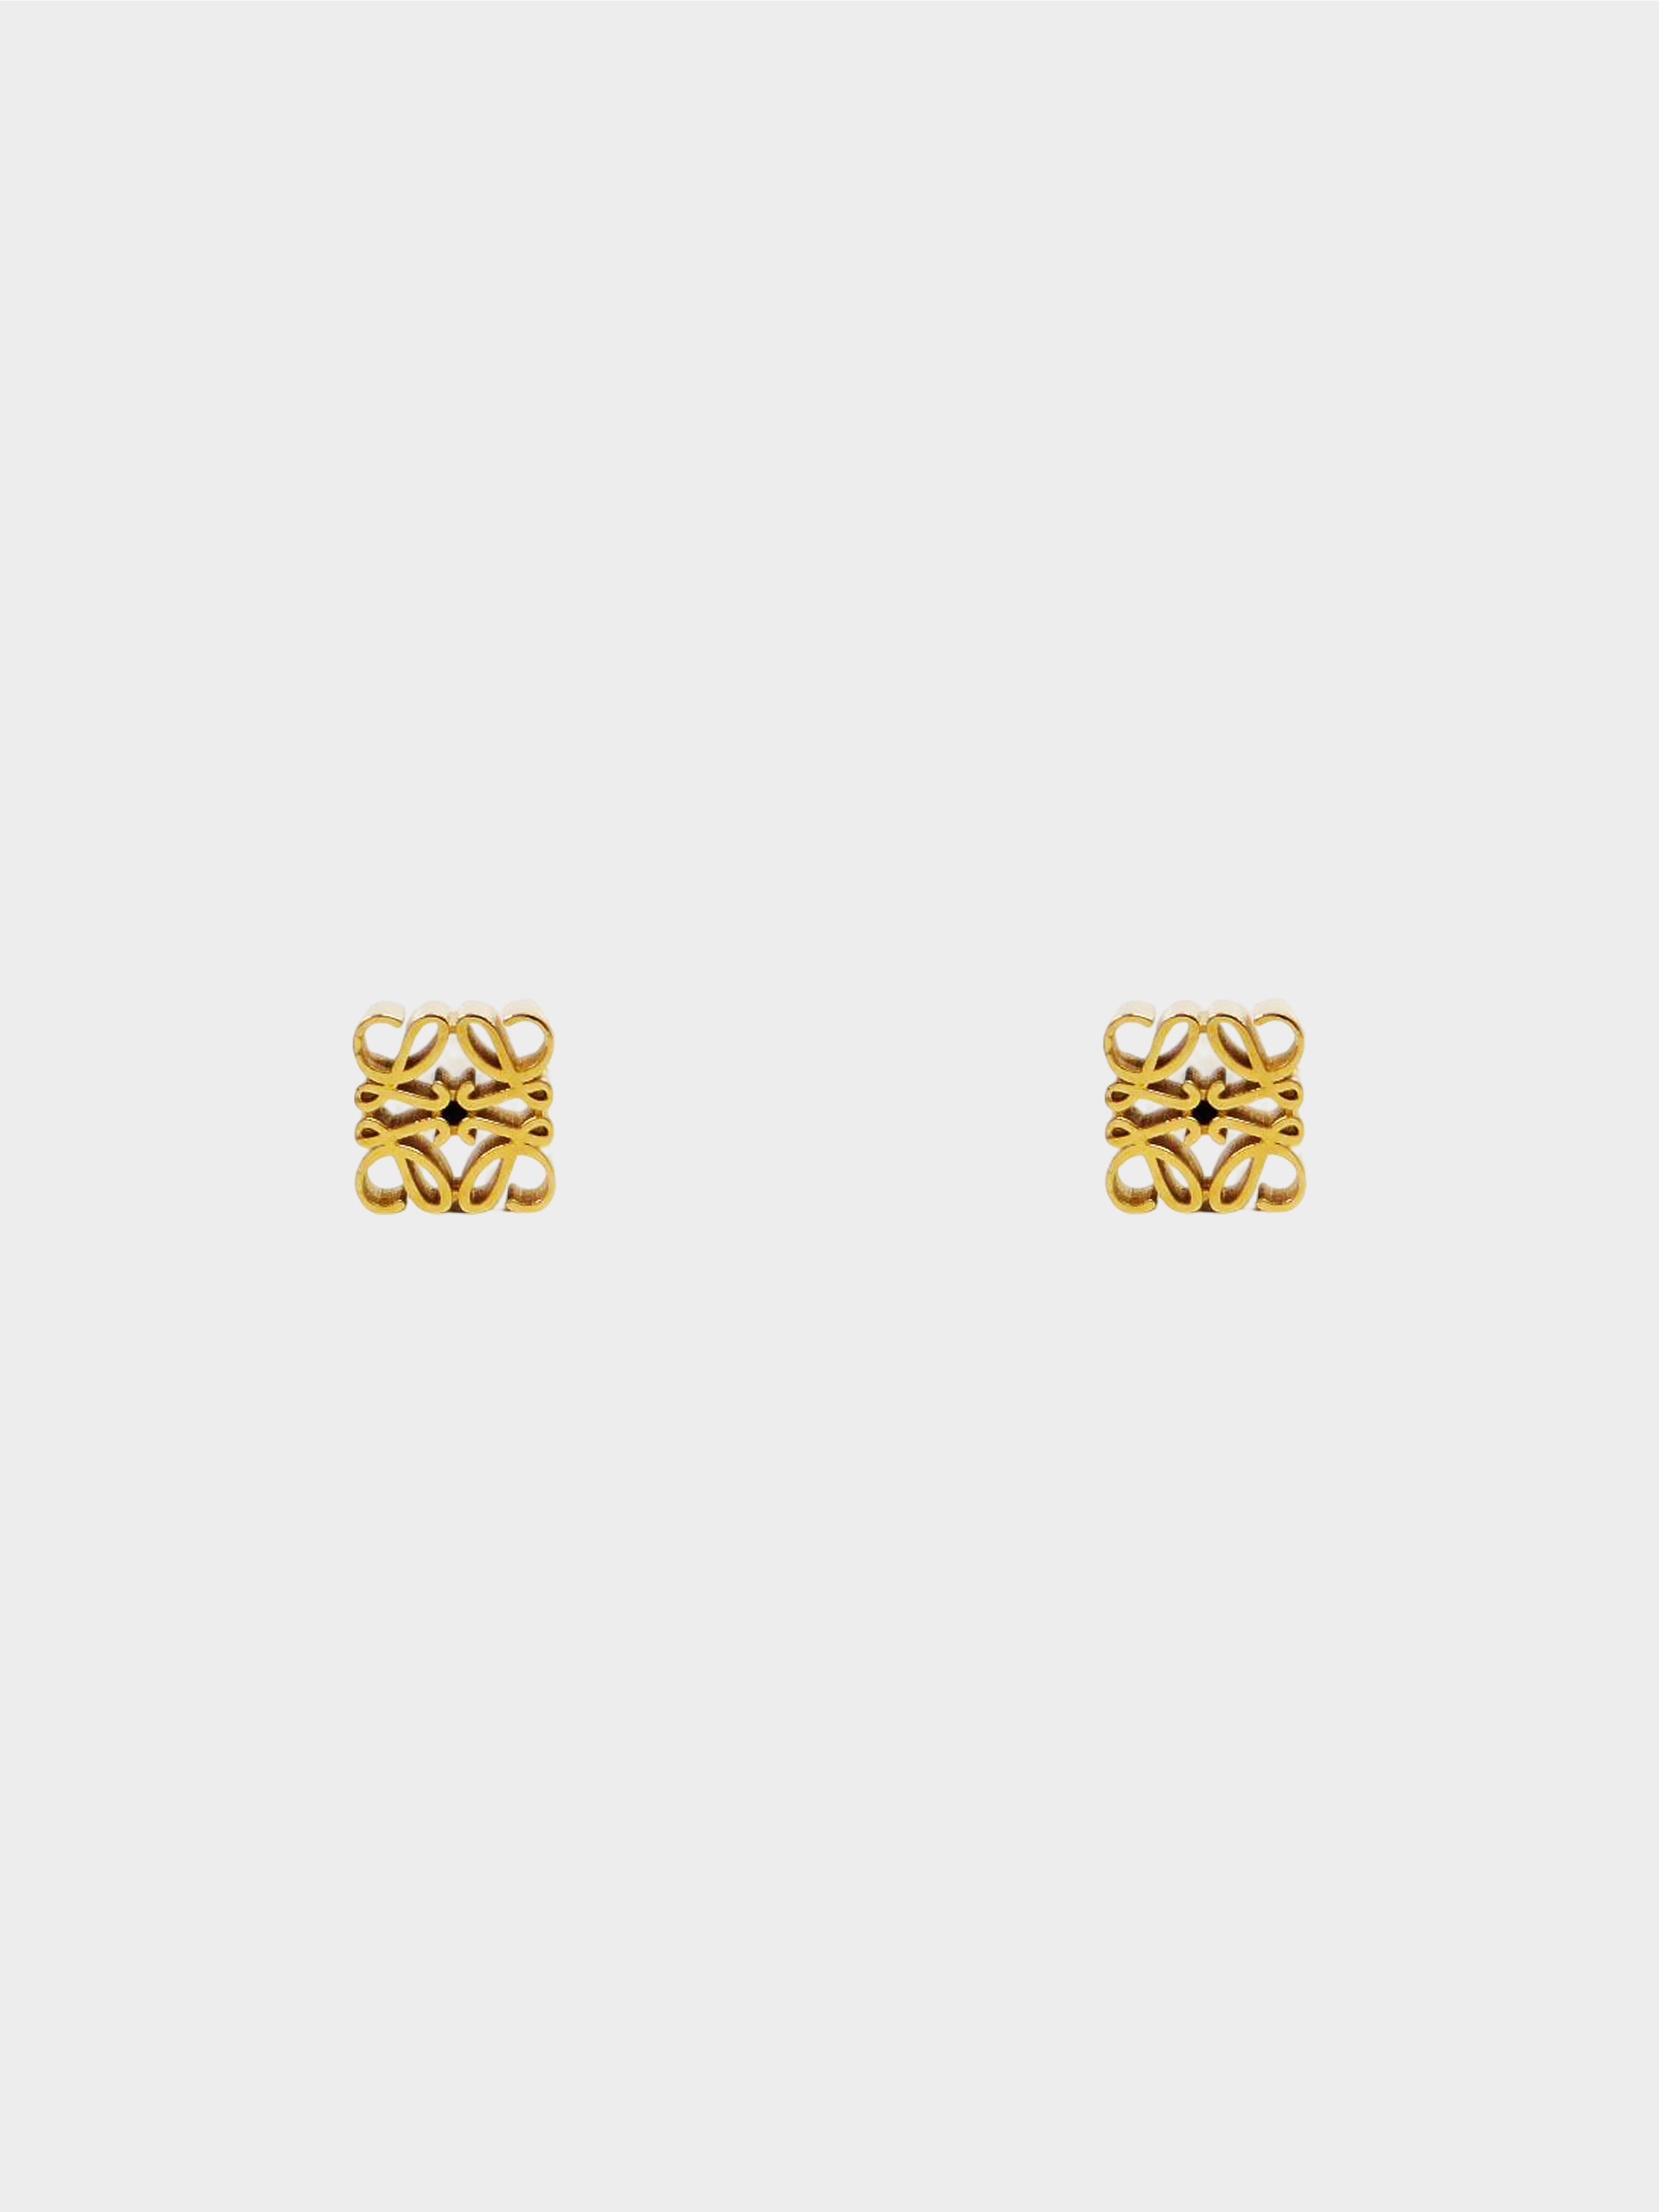 Loewe 2010s Gold Anagram Stud Earrings